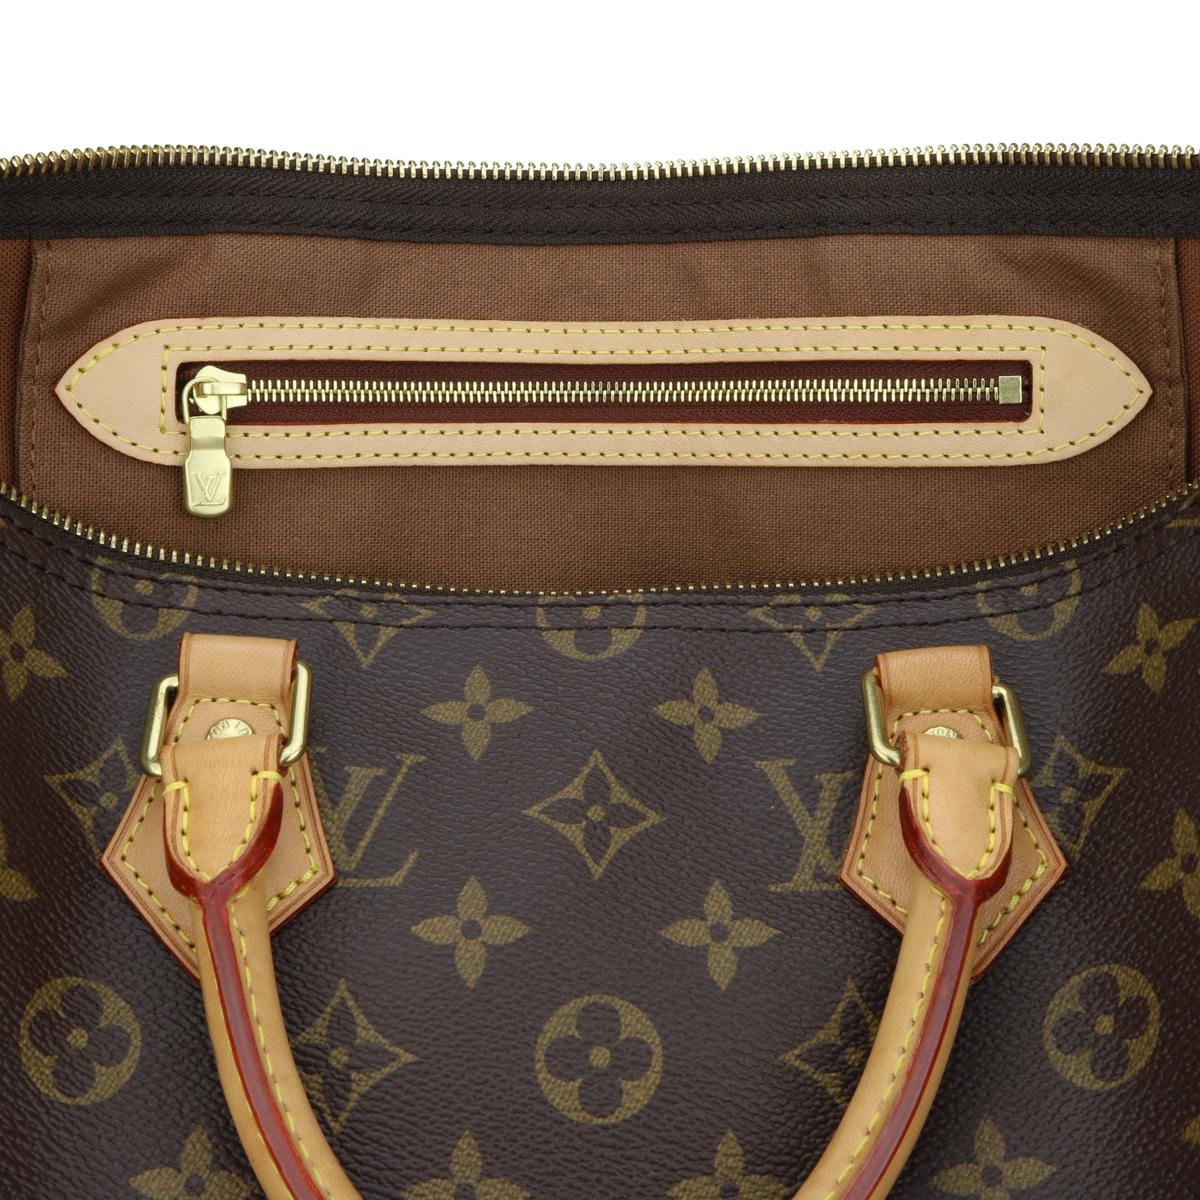 Louis Vuitton Speedy 35 Bag in Monogram 2018 12